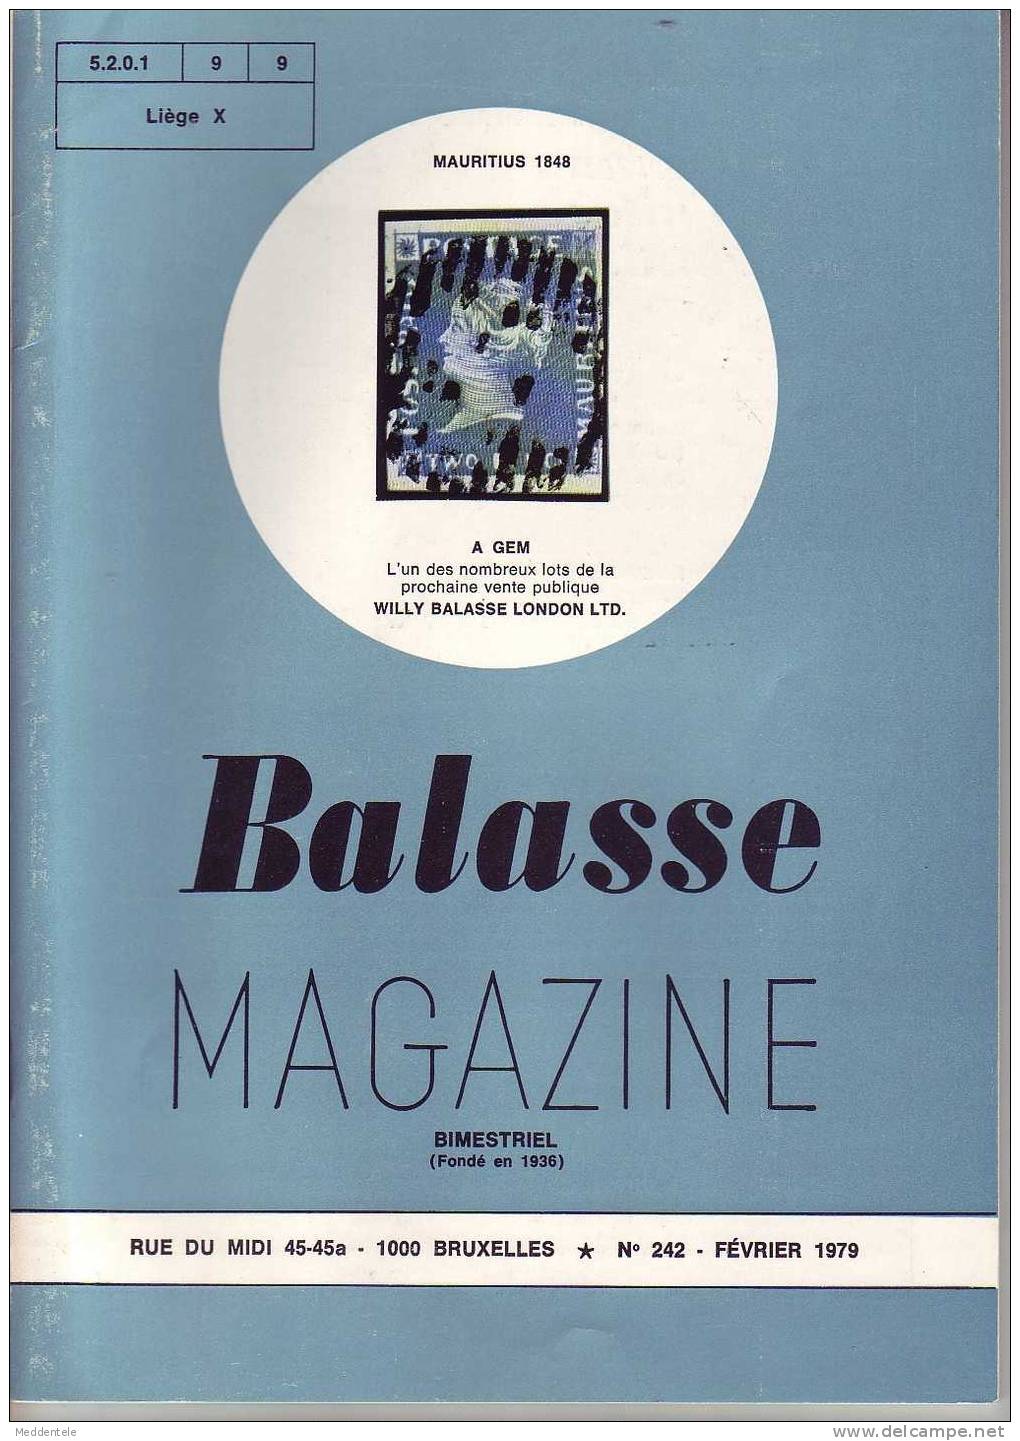 BALASSE MAGAZINE N° 242 - Français (àpd. 1941)